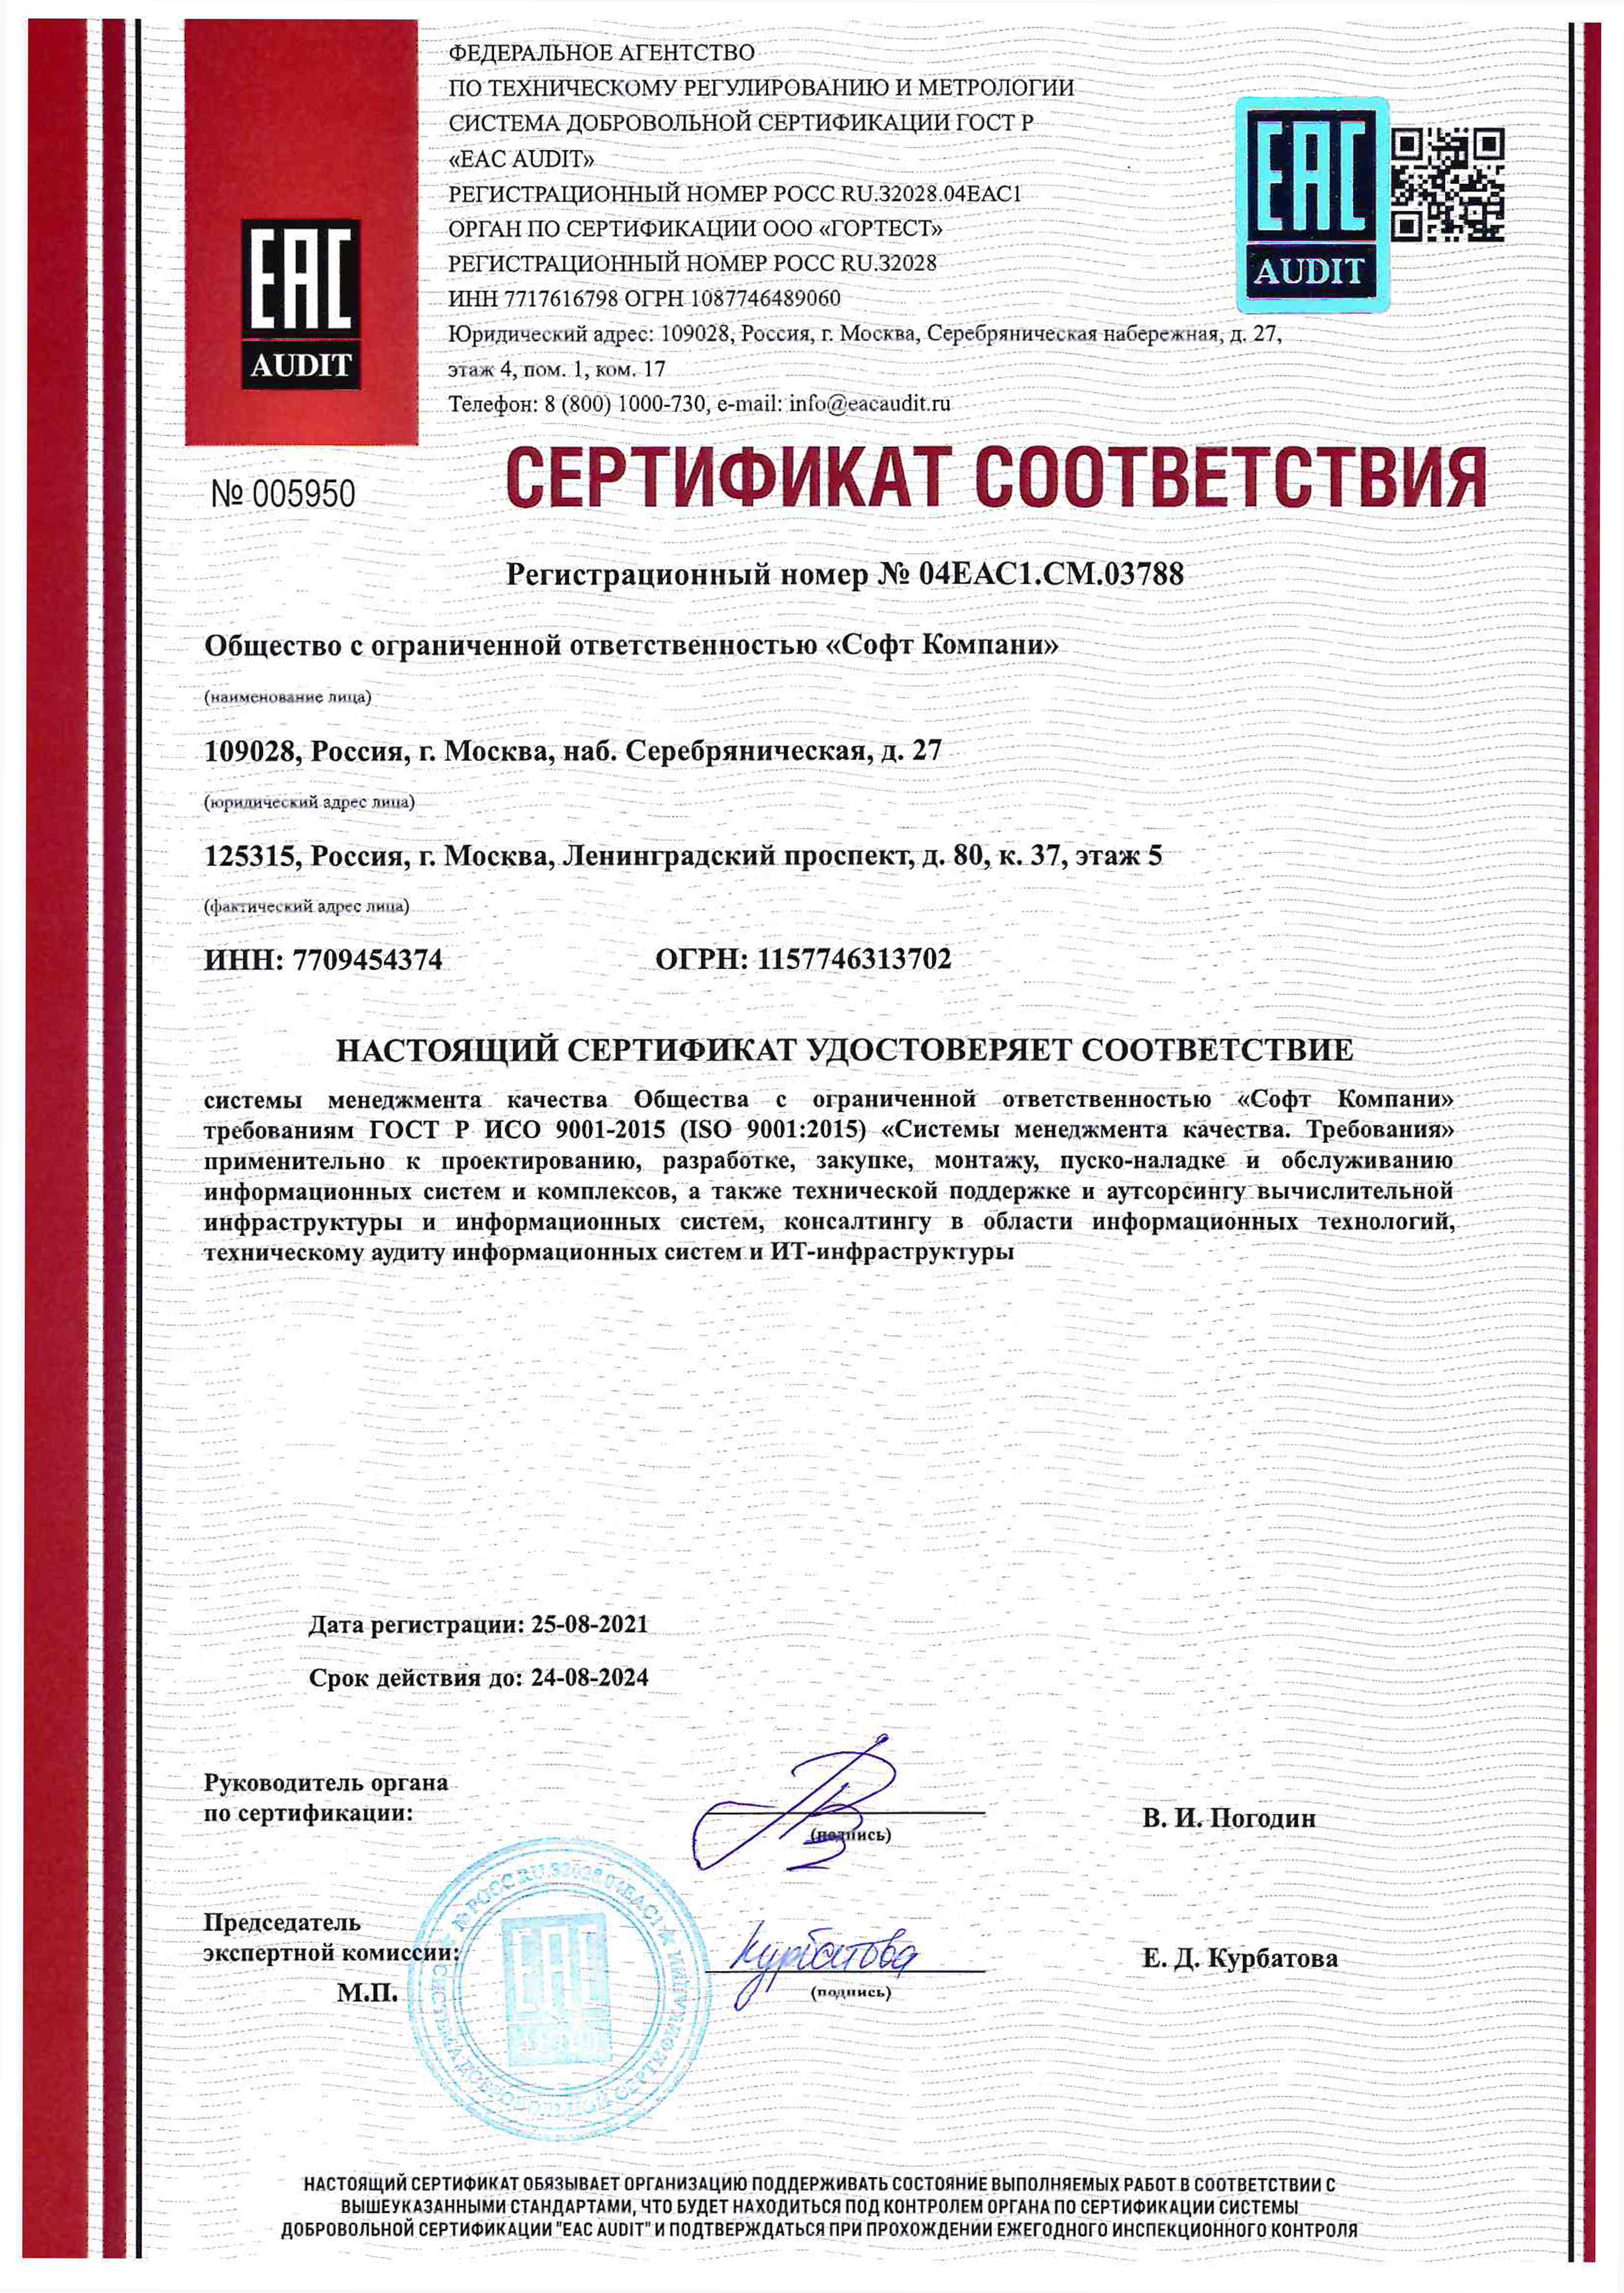 Сертификат соответствия системы менеджмента качества ГОСТ Р ИСО 9001-2015 (ISO 9001-2015)